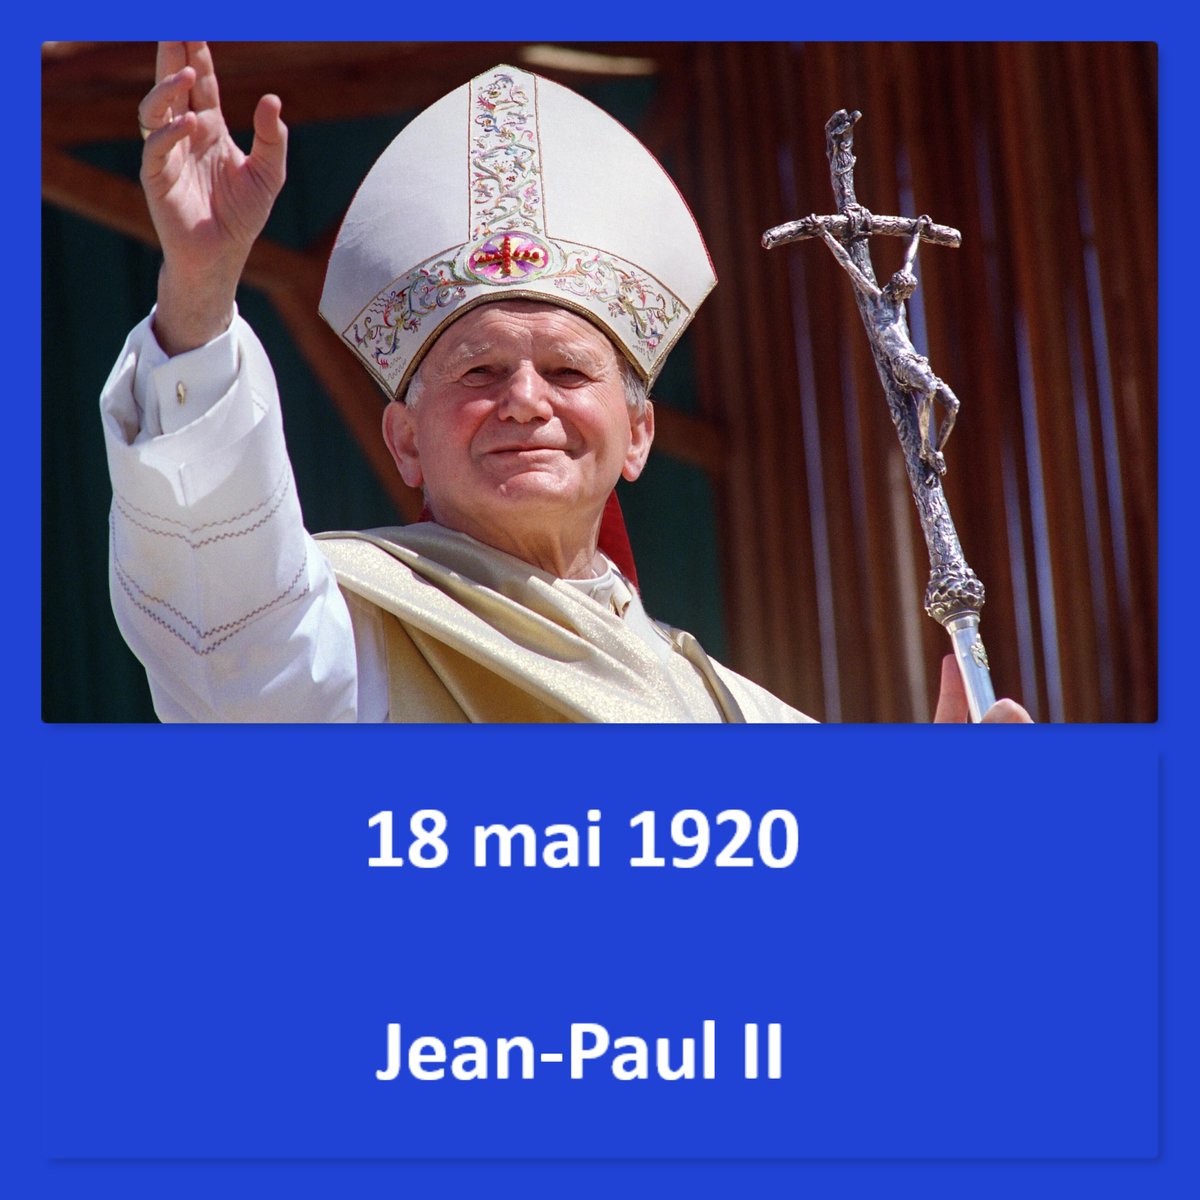 #naissanceshistoriques #histoire #anniversairesdenaissance #18mai1920 #wadowice #pologne #jeanpaulII #pape #rome #vaticanII #voyages #béatification #canonisation